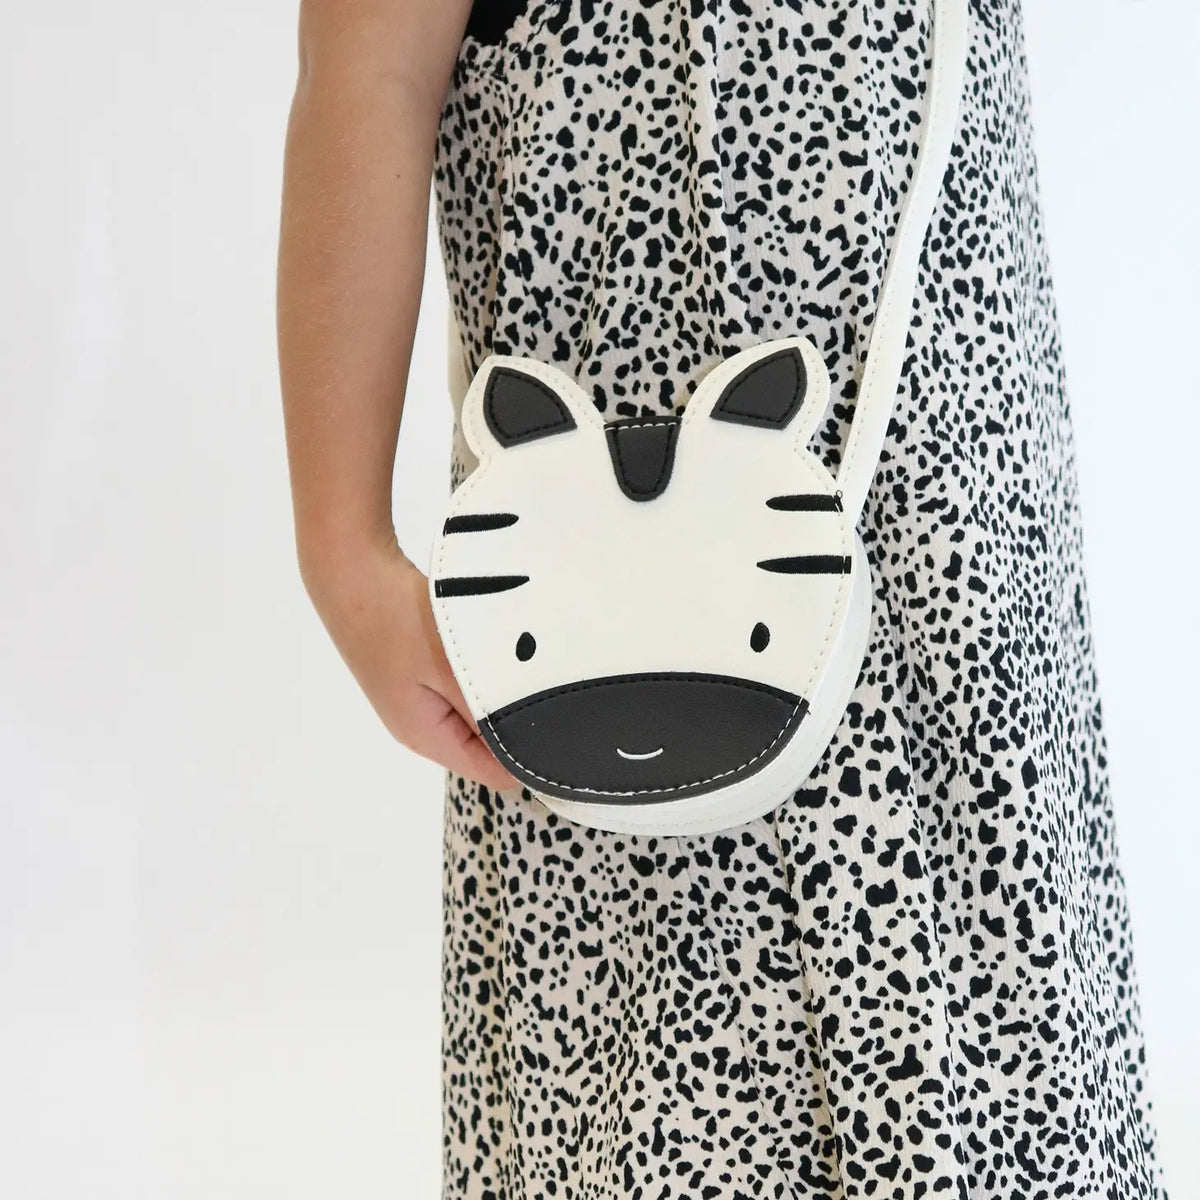 Aiko the Zebra Bag Cover